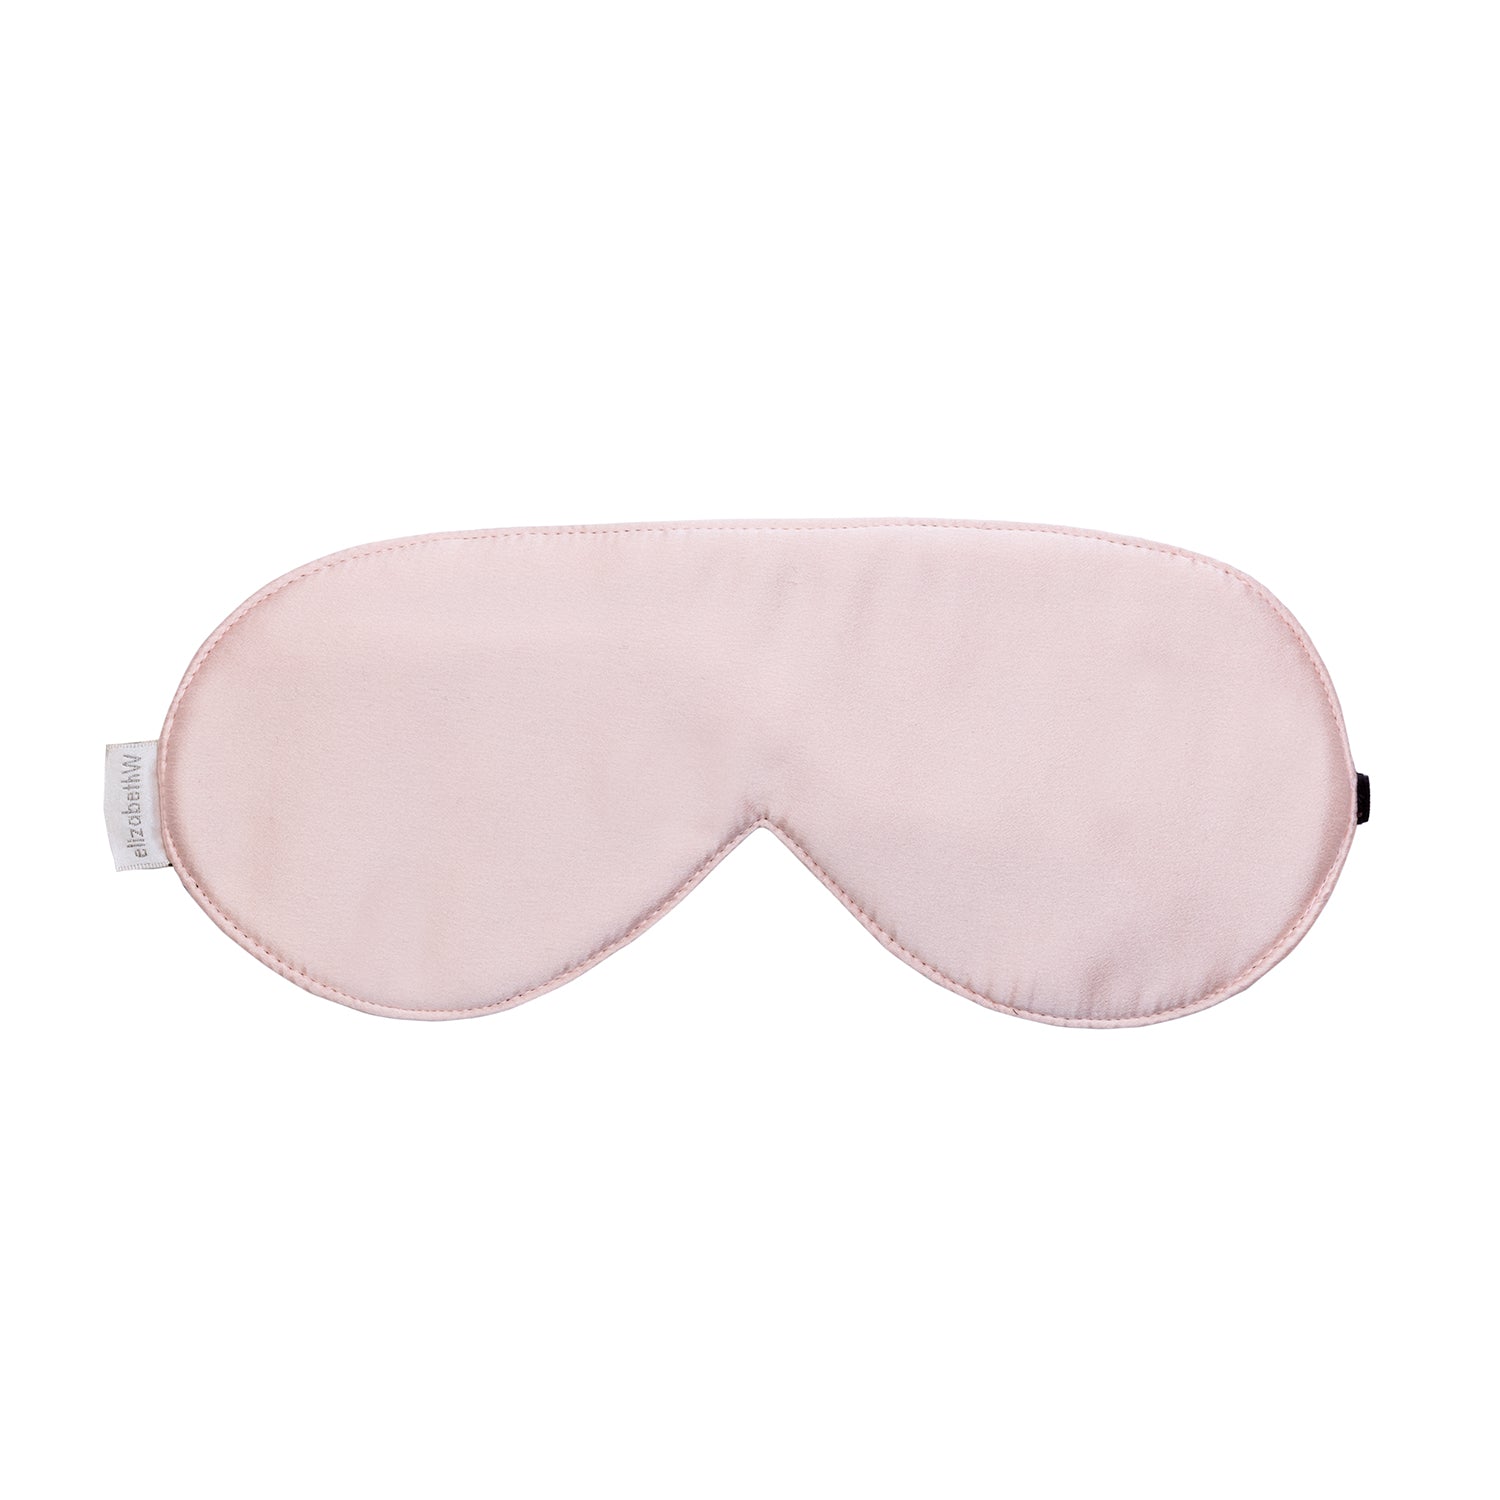 pink eye mask for sleeping